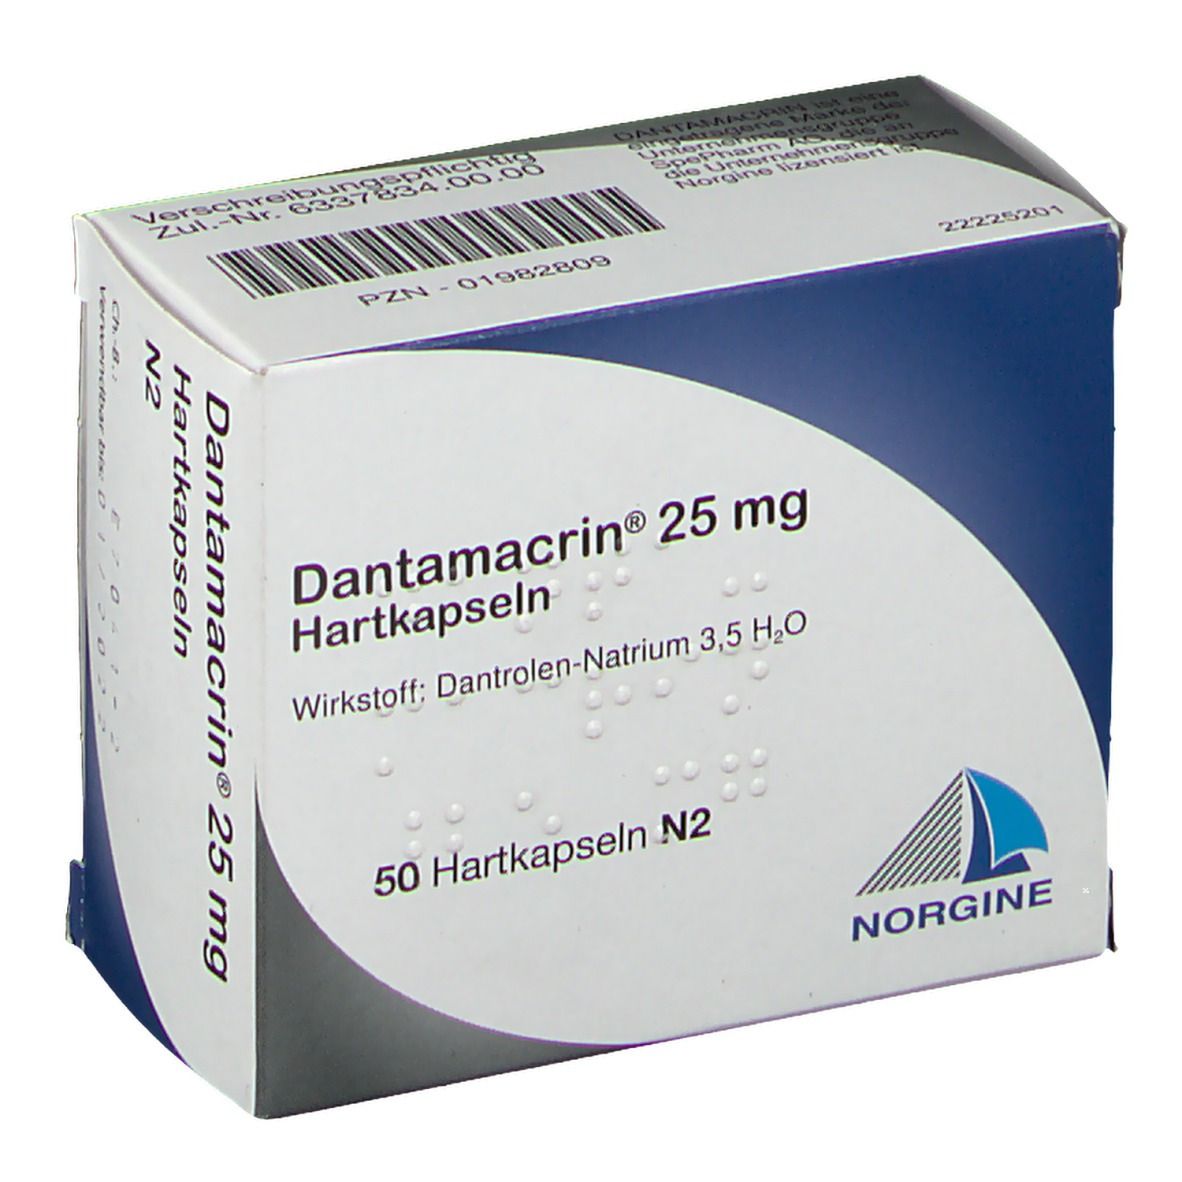 Dantamacrin® 25 mg